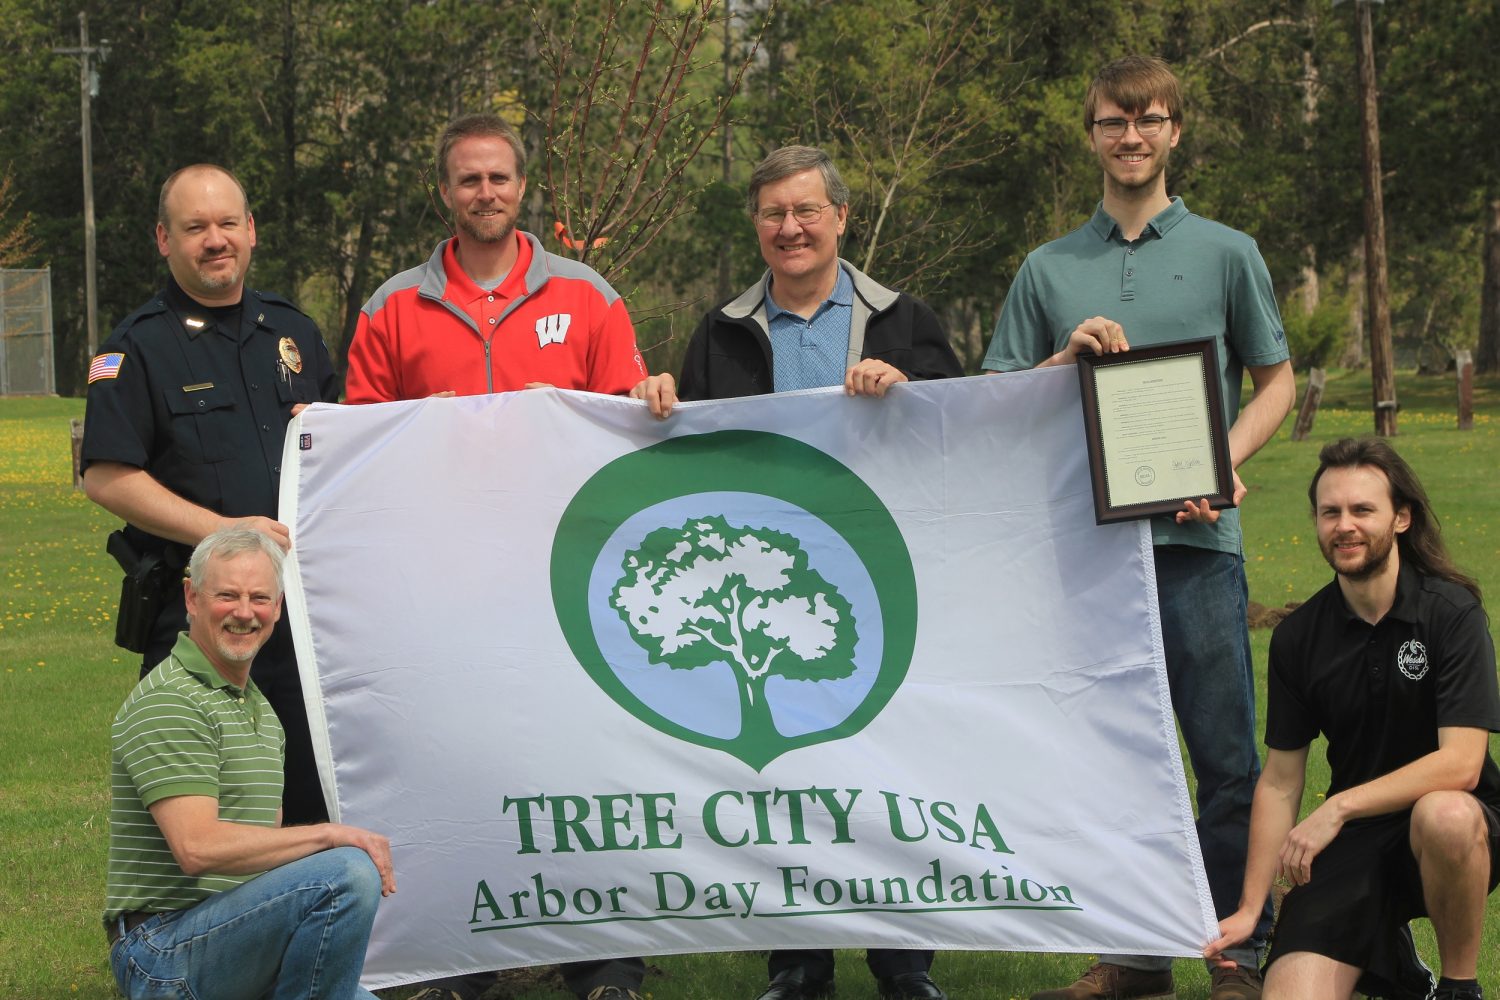 Arbor Day Foundation names Merrill Tree City USA